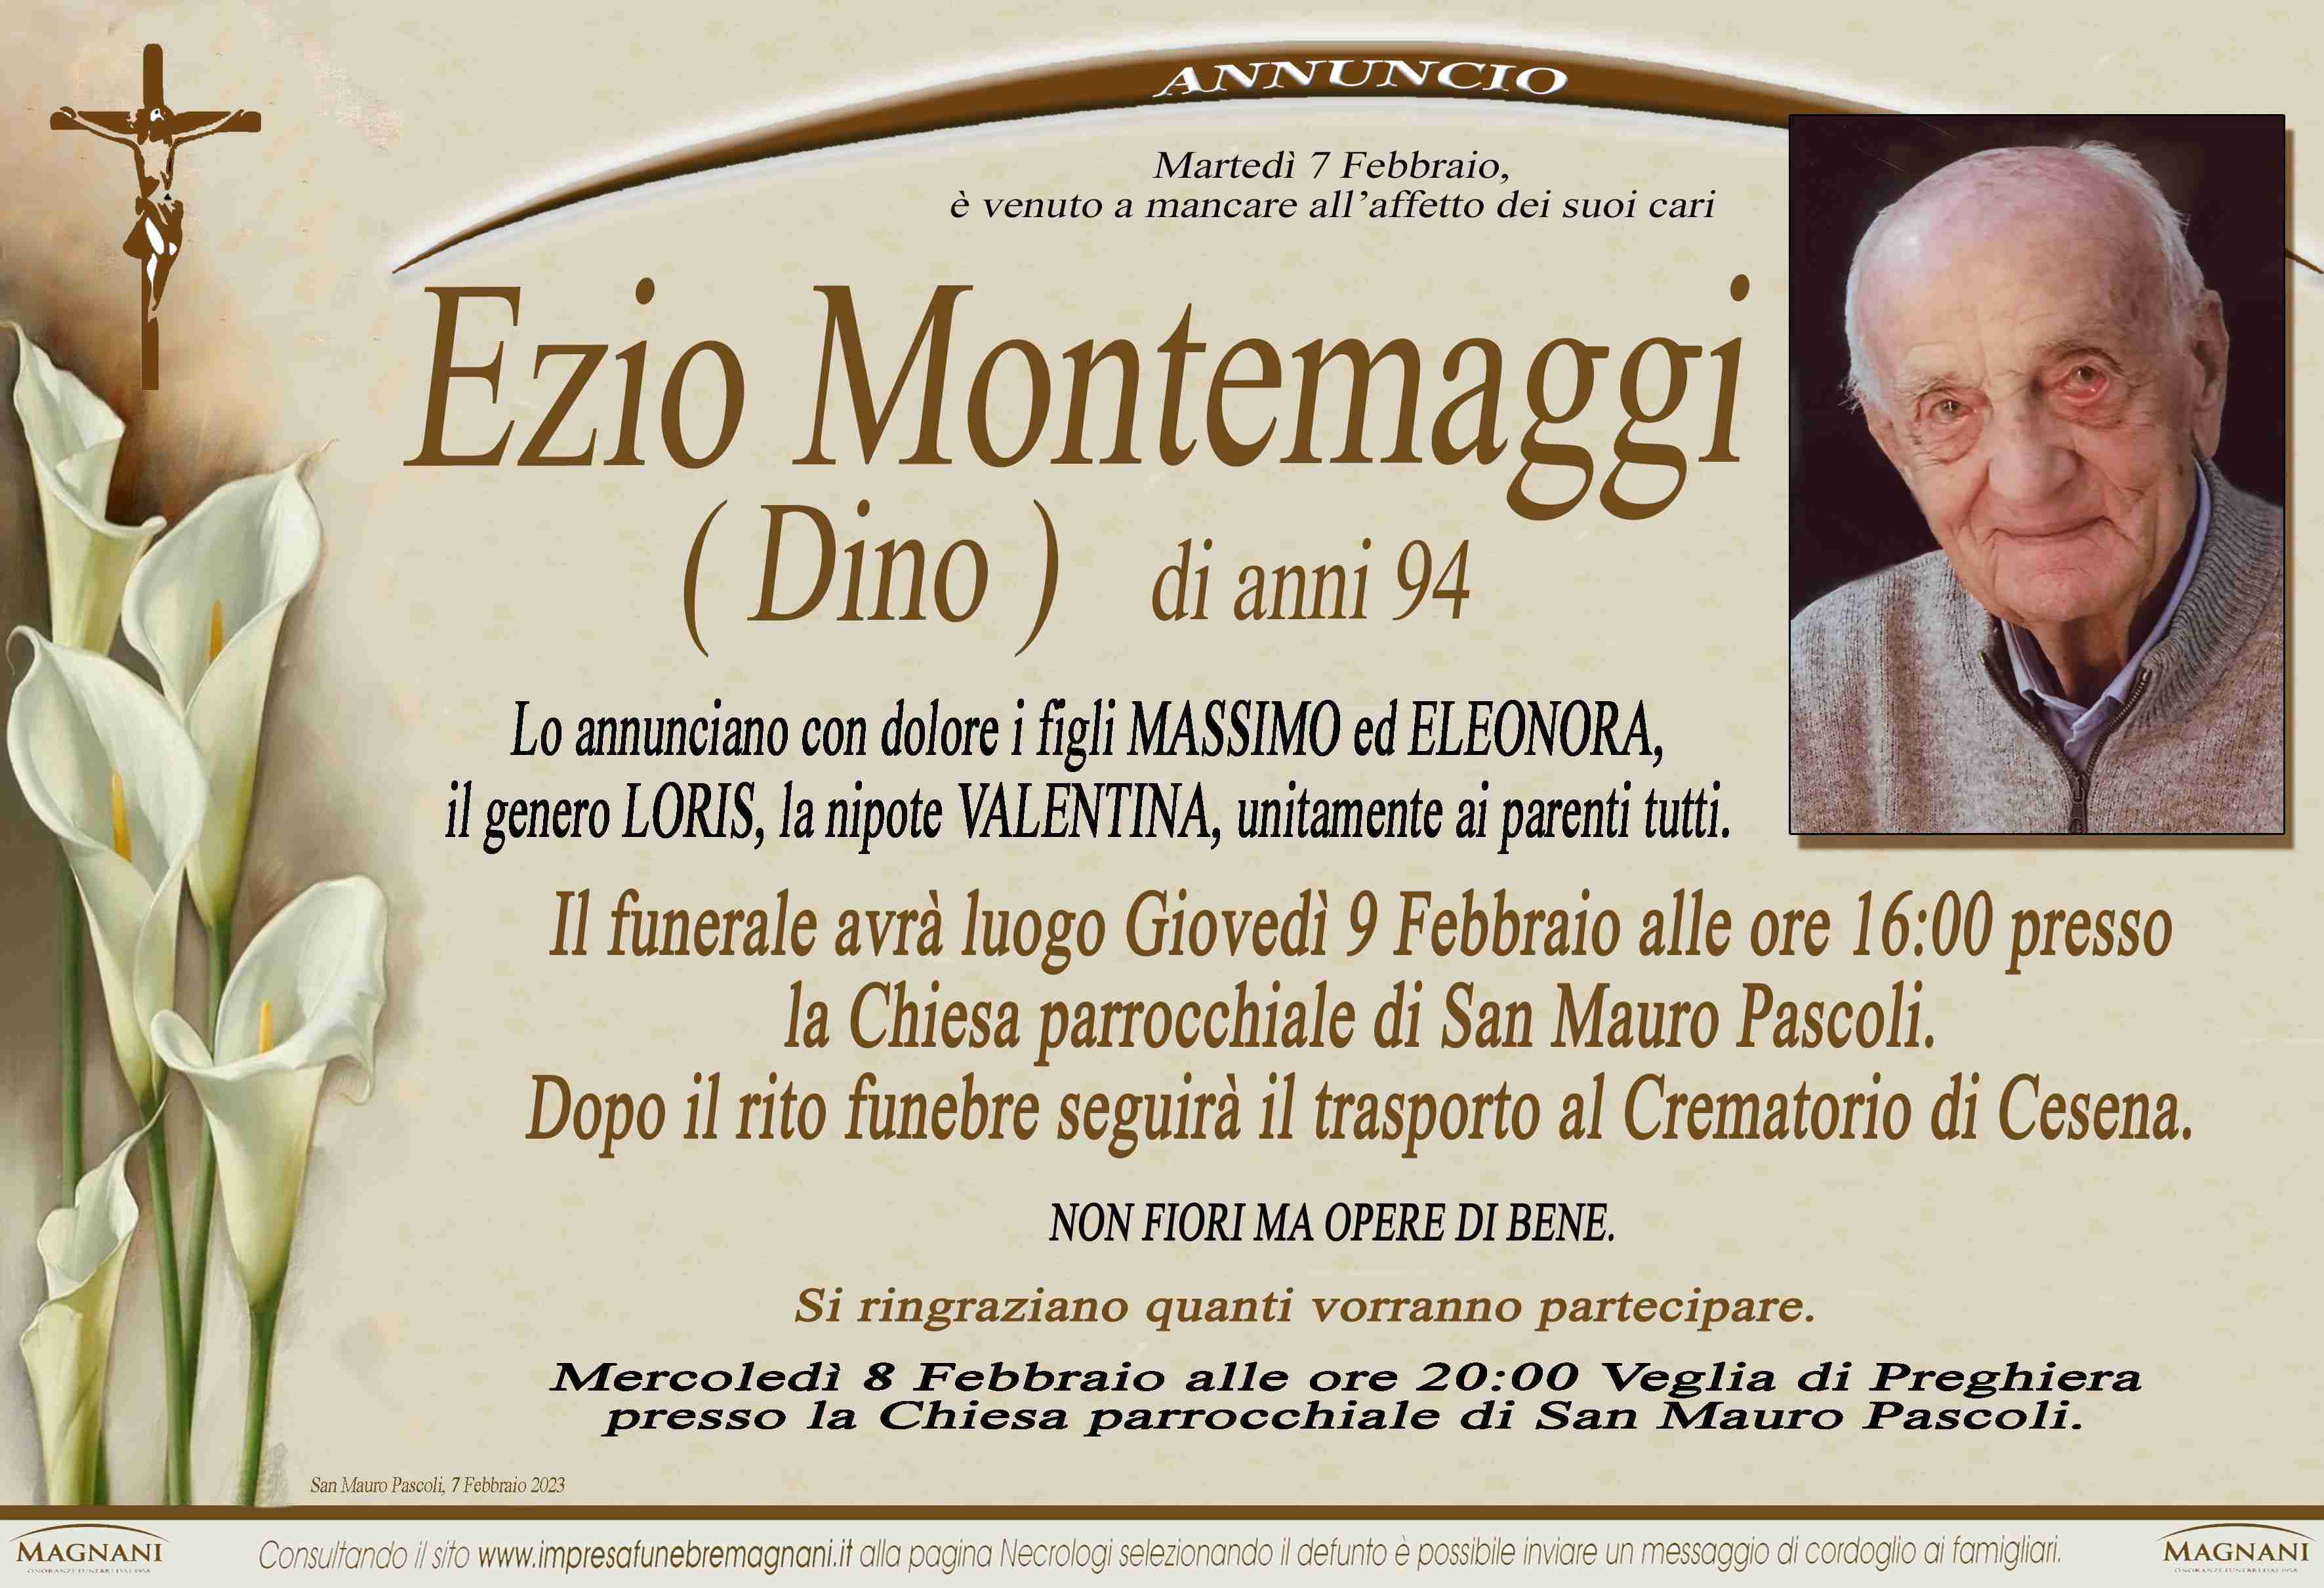 Ezio Montemaggi